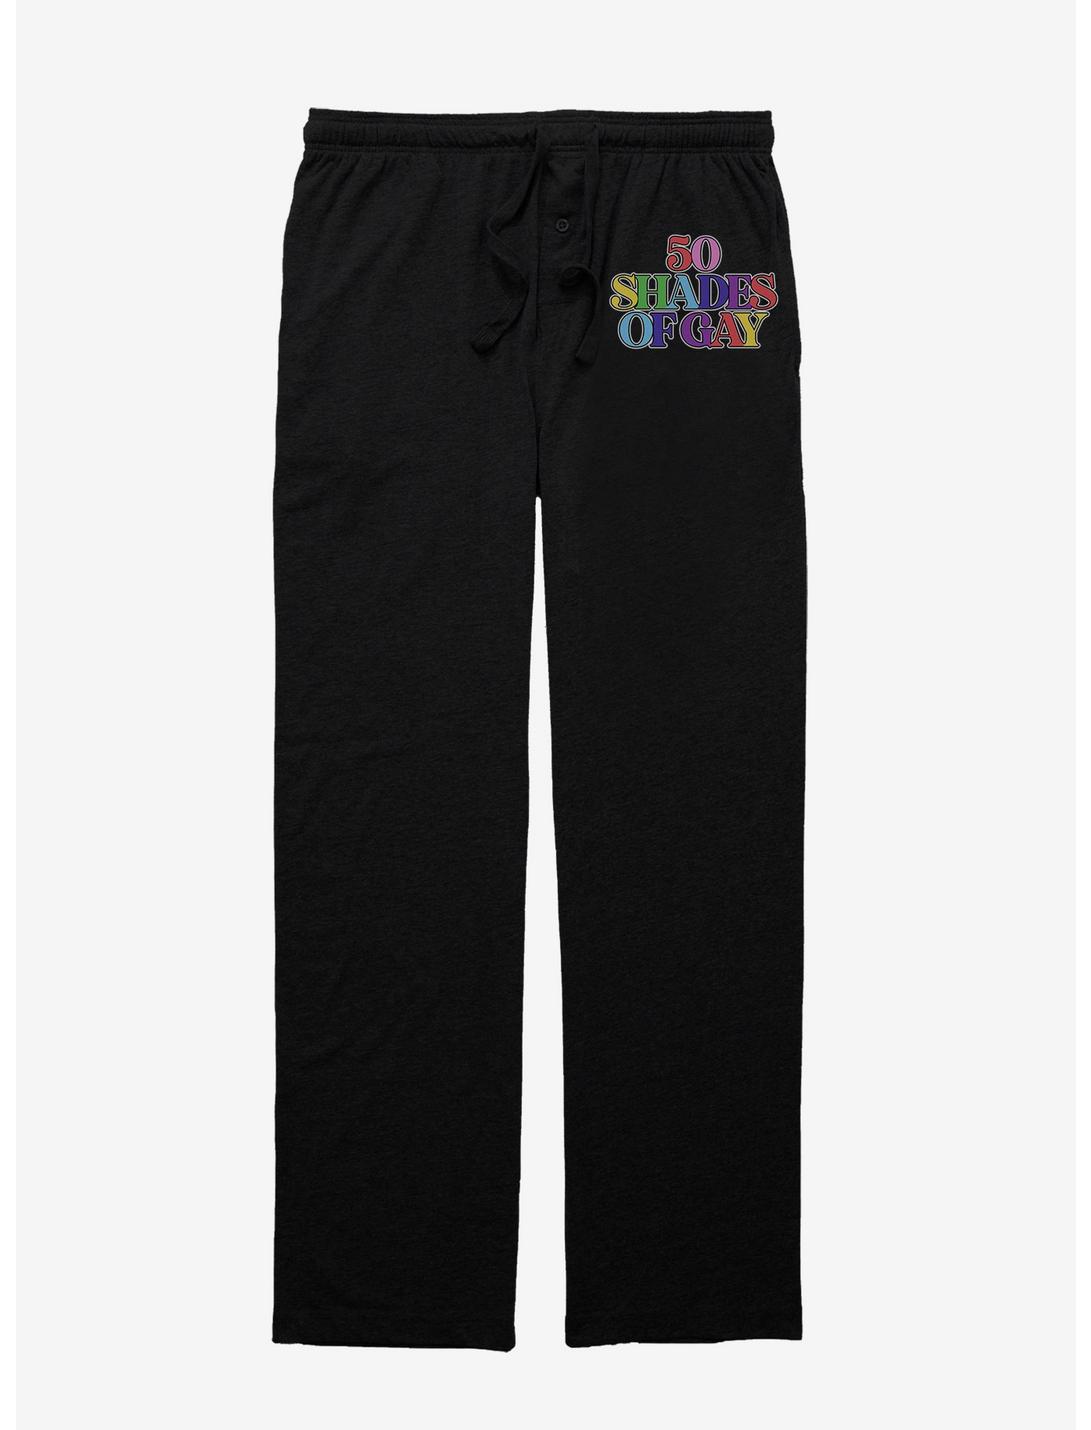 Fifty Shades Of Gay Pajama Pants, BLACK, hi-res